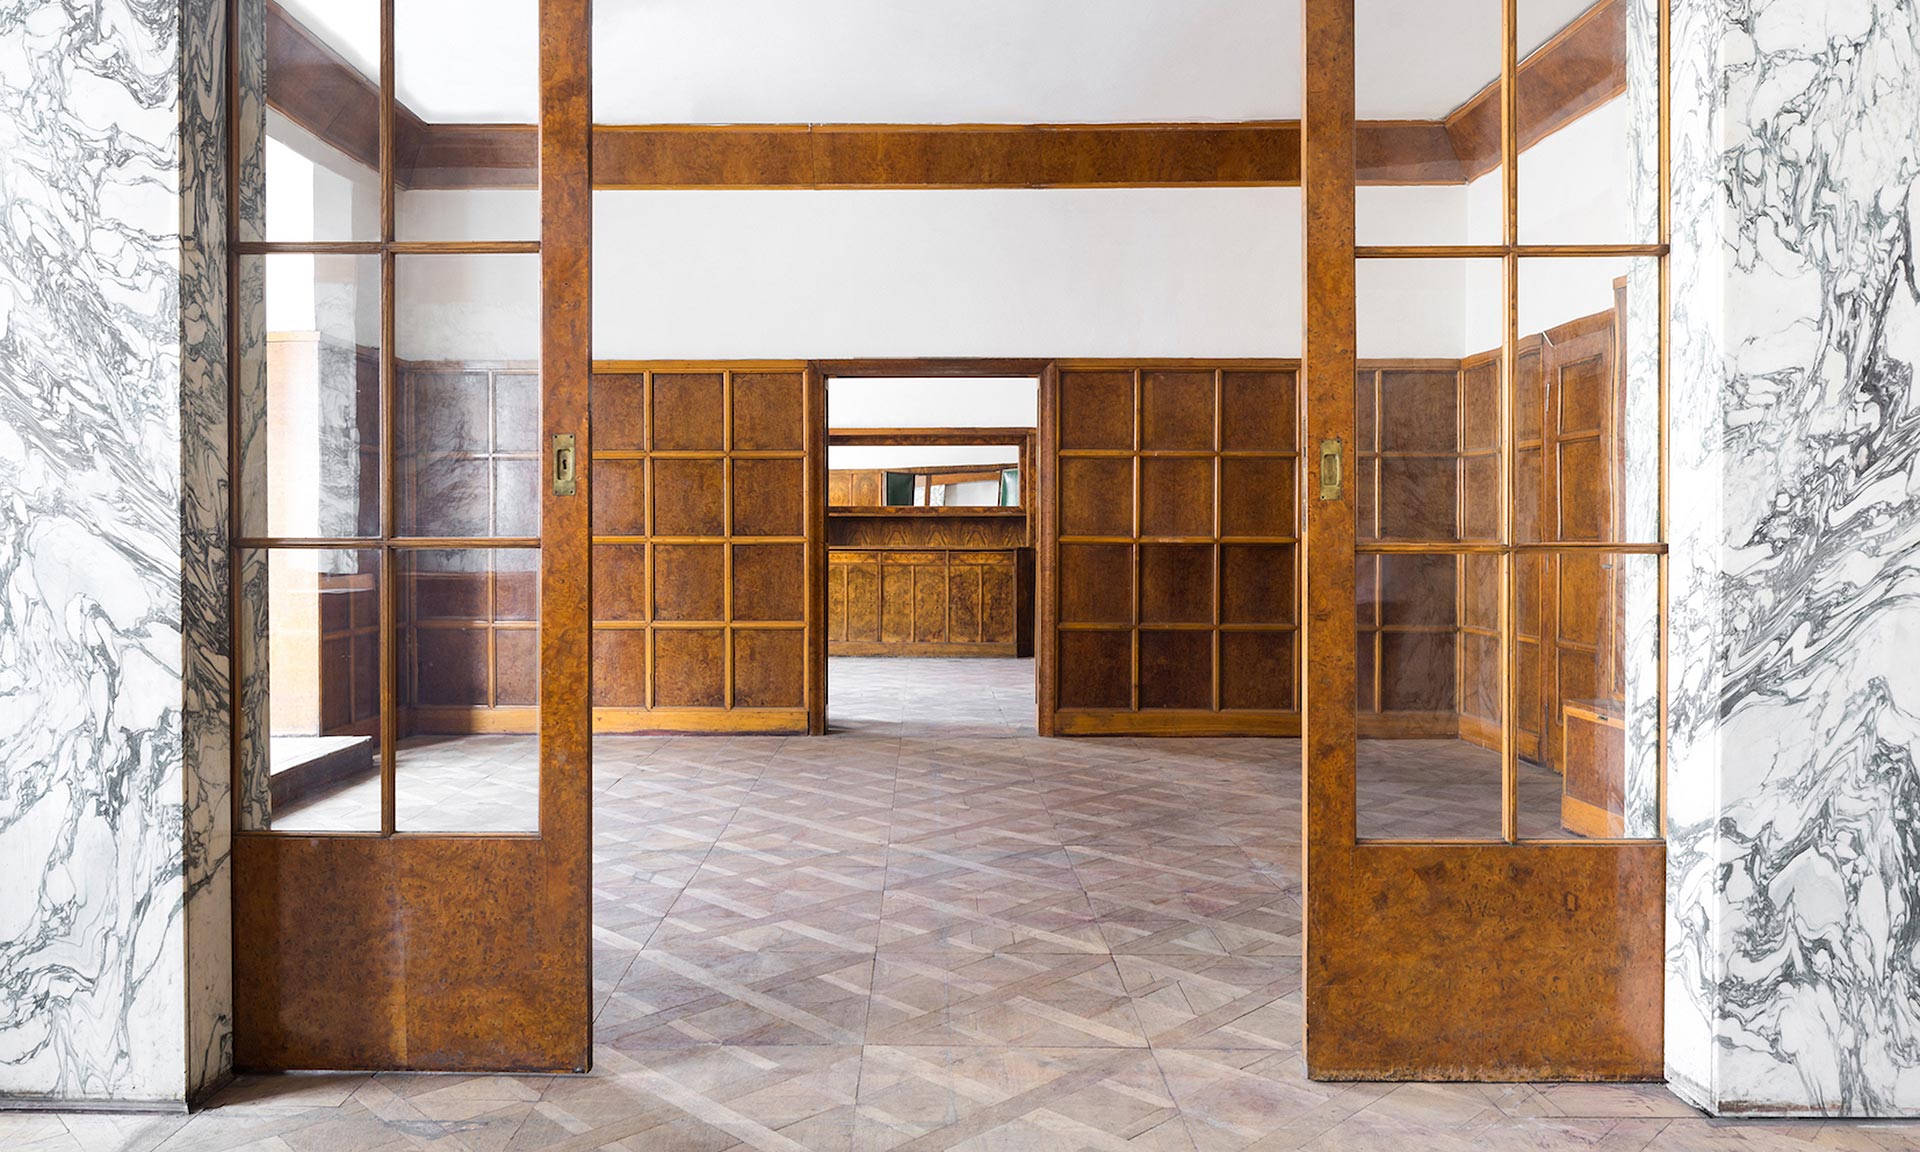 Plzeňské interiéry Adolfa Loose patří mezi nejnavštěvovanější české památky